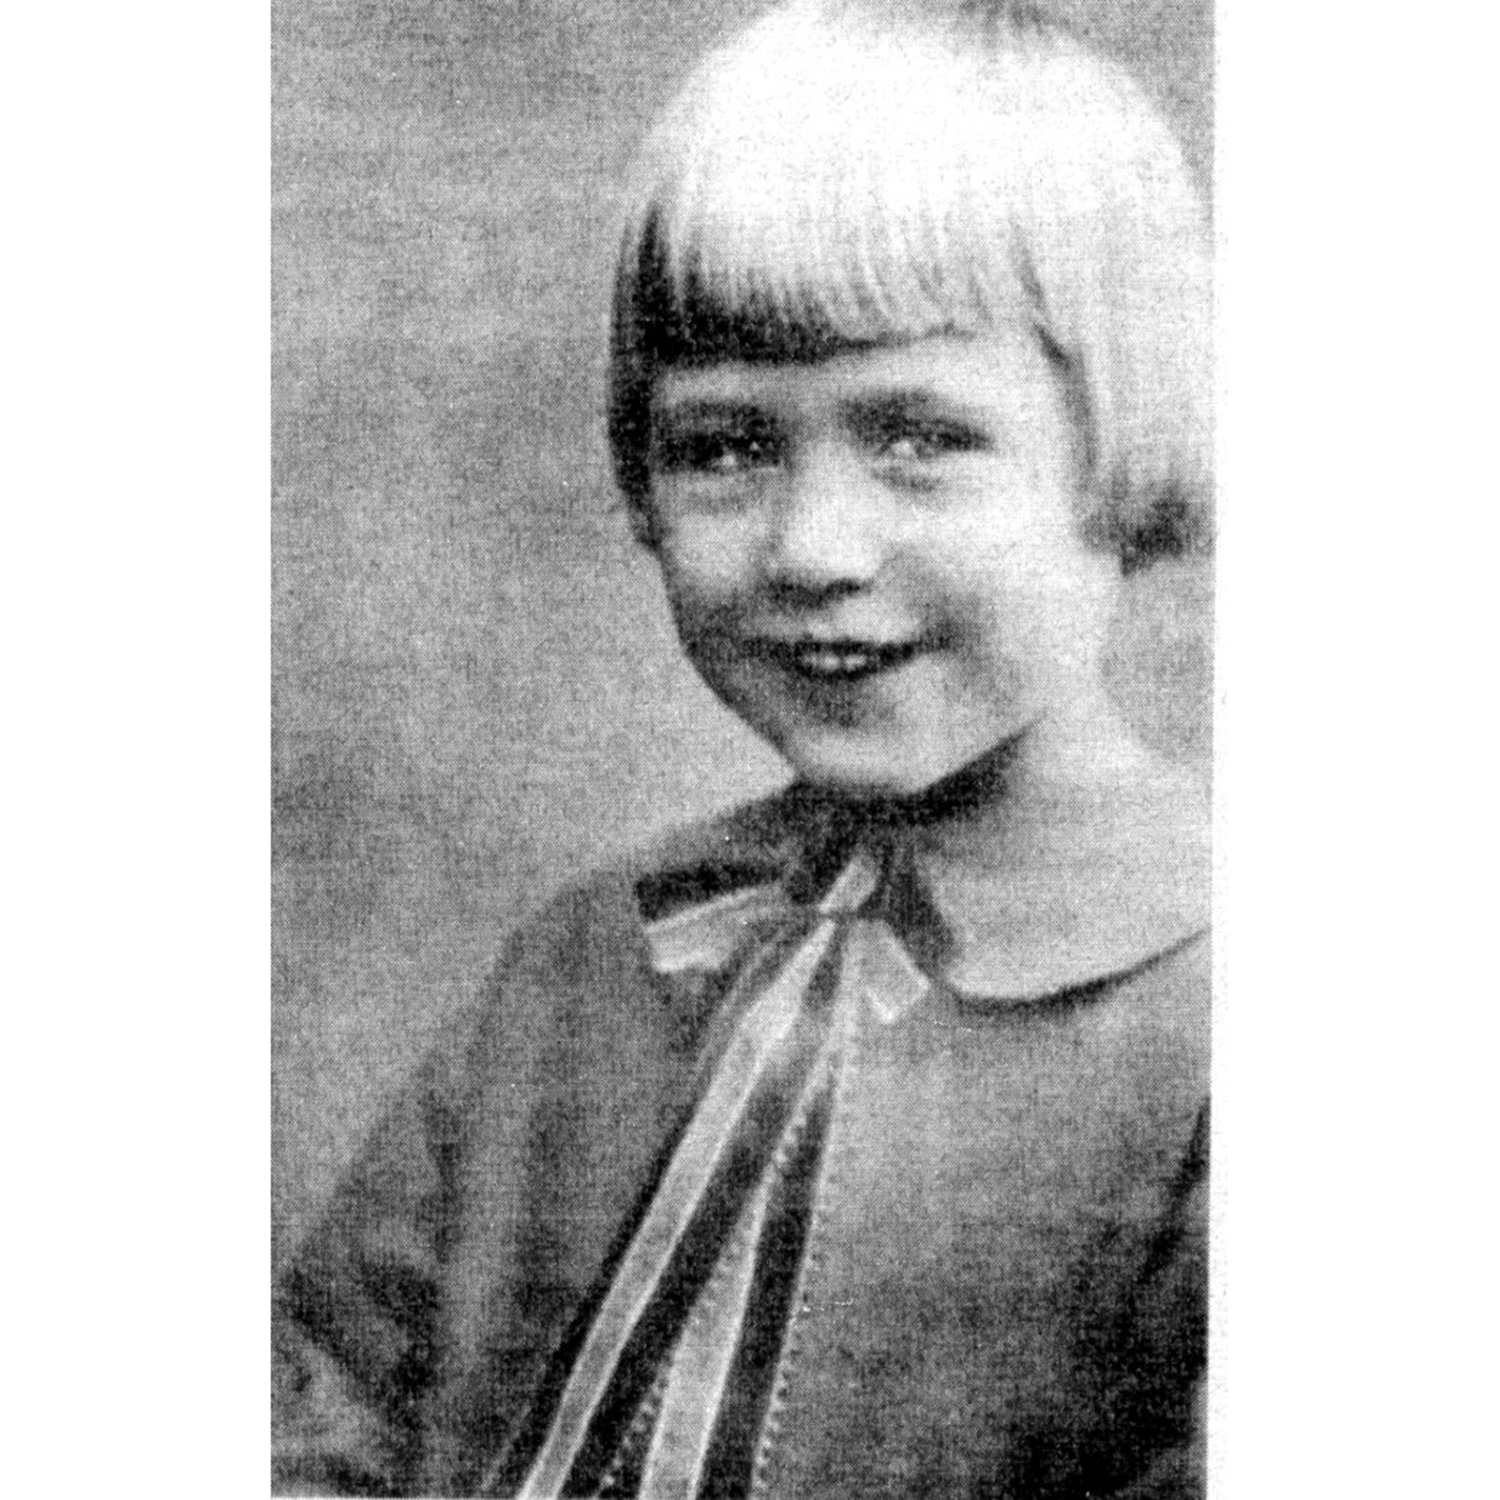 Pekka Langer som barn, svartvit bild, blond pojke